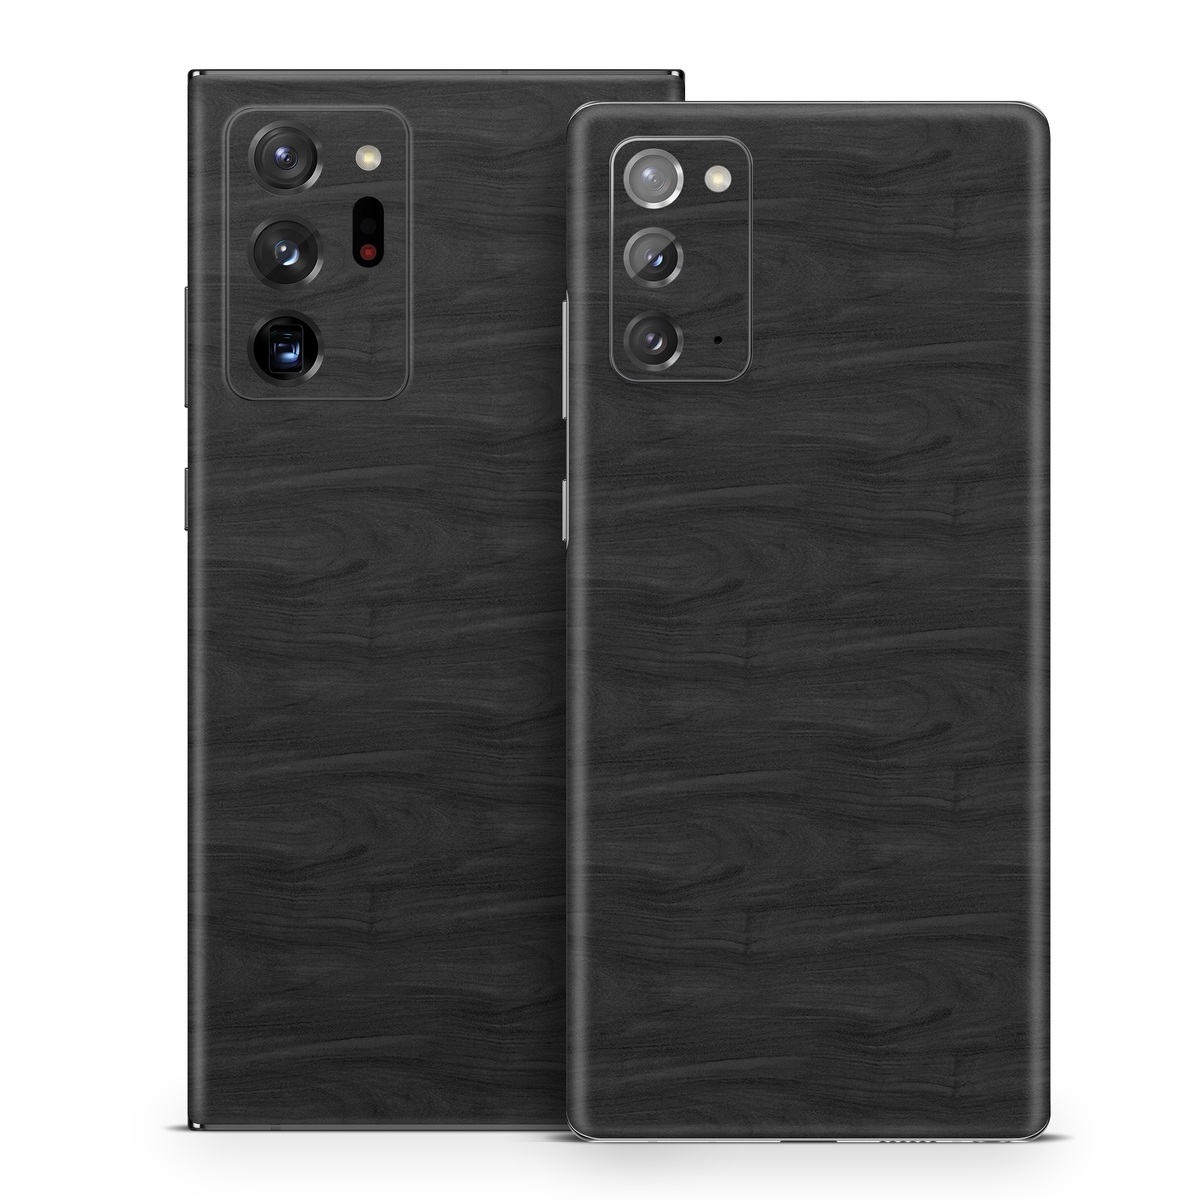 Samsung Galaxy Note 20 Skin design of Black, Brown, Wood, Grey, Flooring, Floor, Laminate flooring, Wood flooring, with black colors